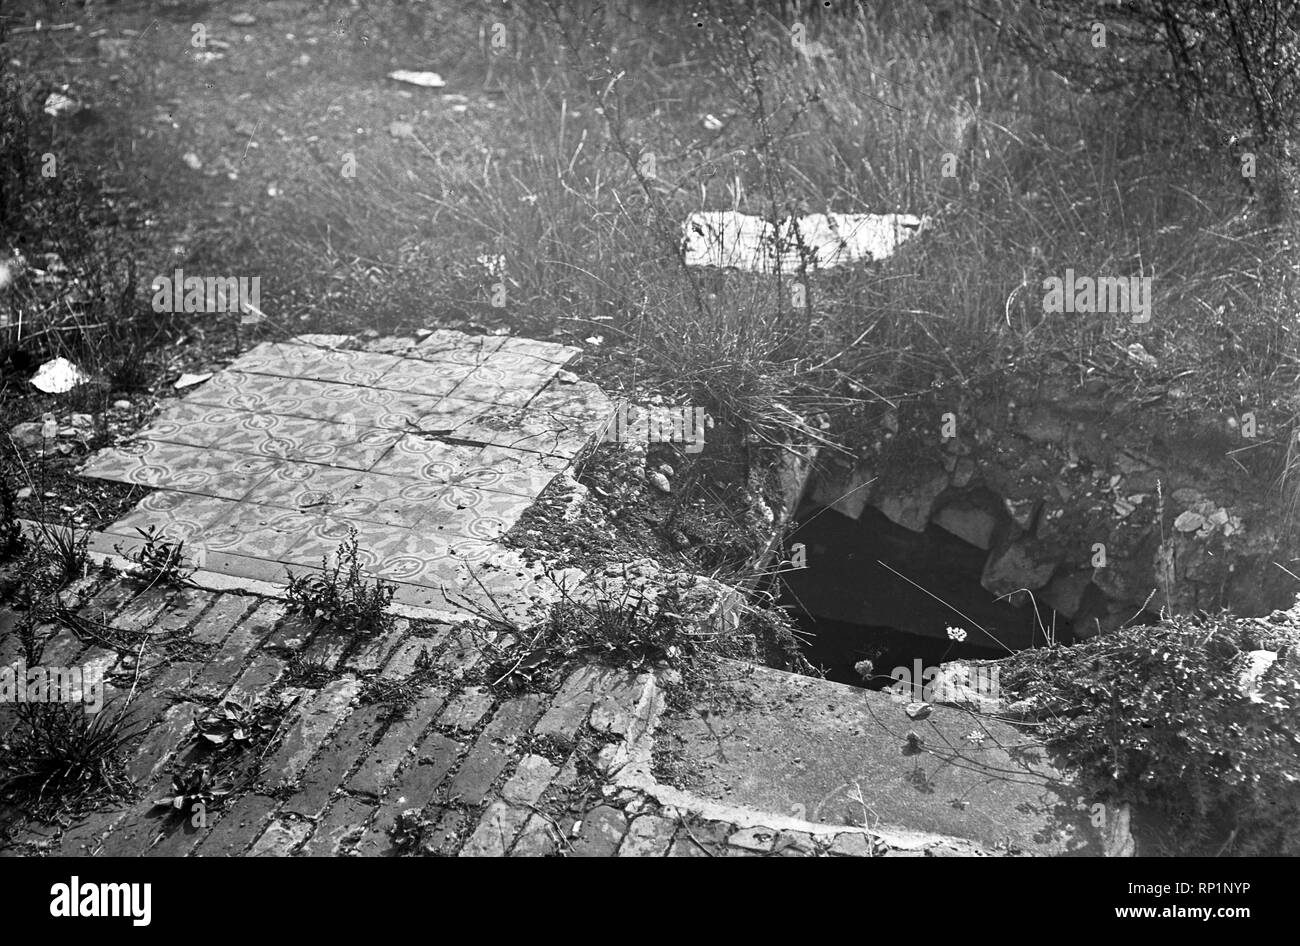 Ruinen Vitry-le-François ca 1920 - Ruins of Vitry-le-François 1920s Stock Photo